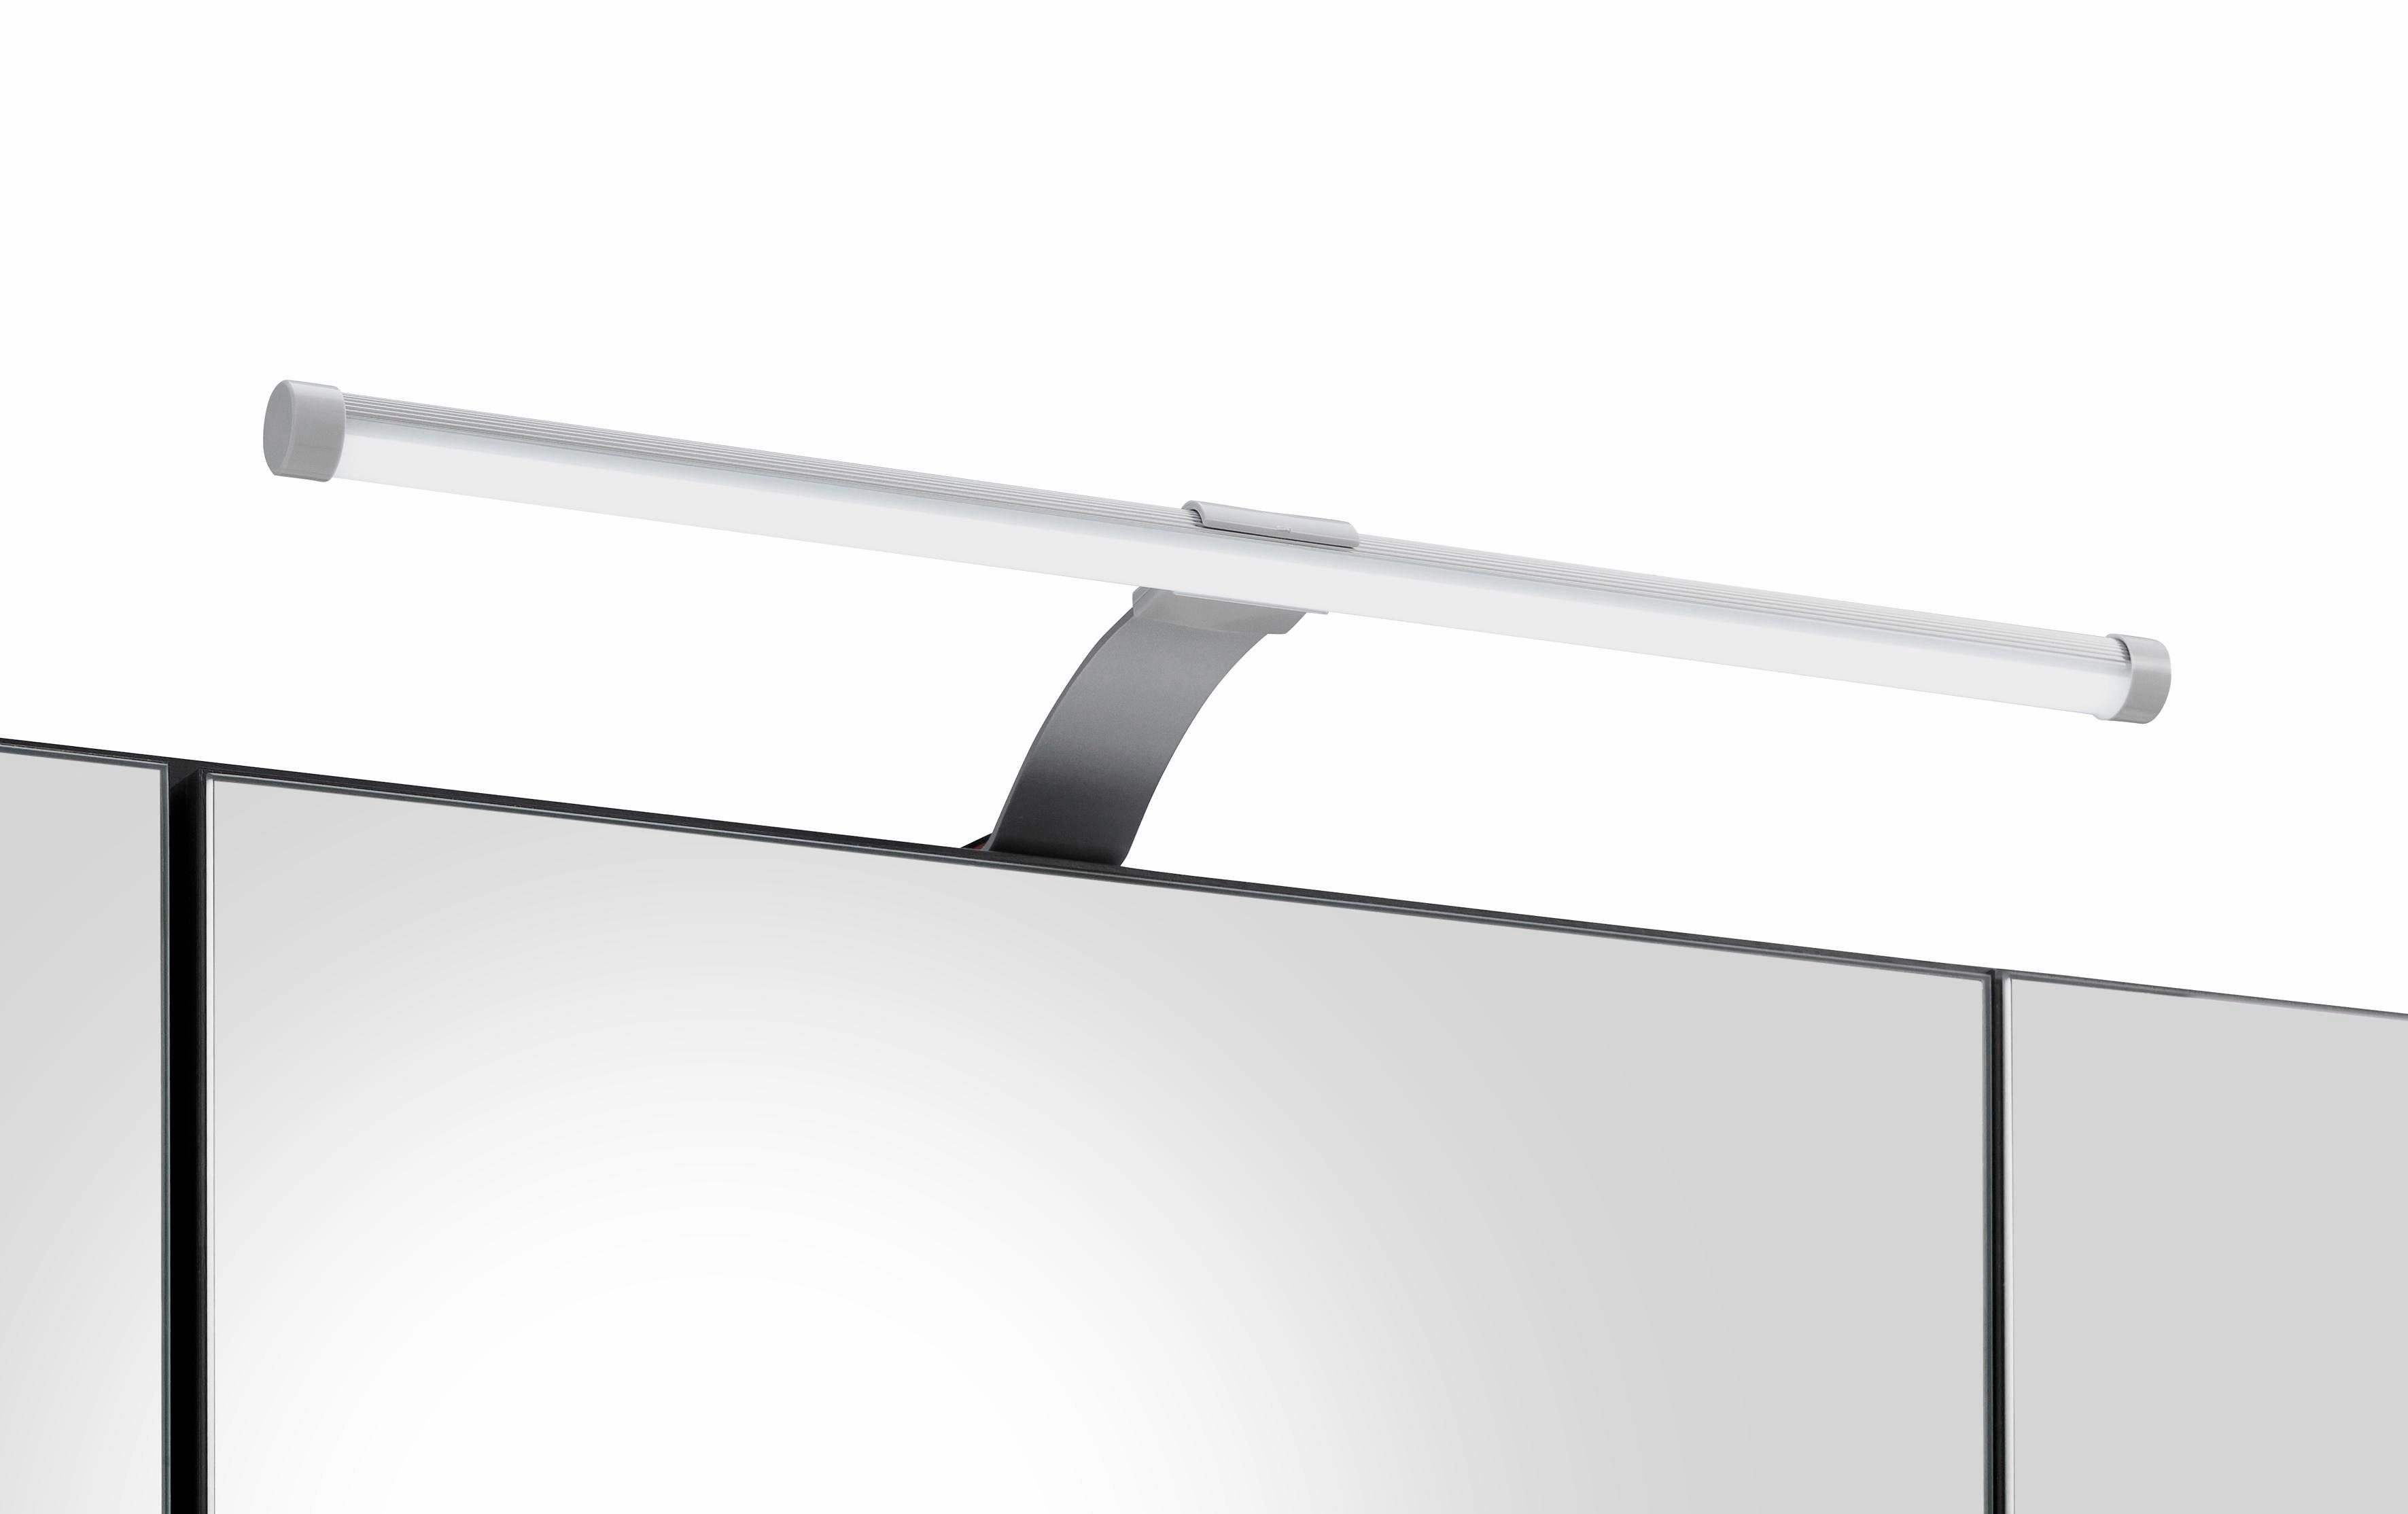 HELD MÖBEL Spiegelschrank Portofino mit LED-Beleuchtung weiß weiß 